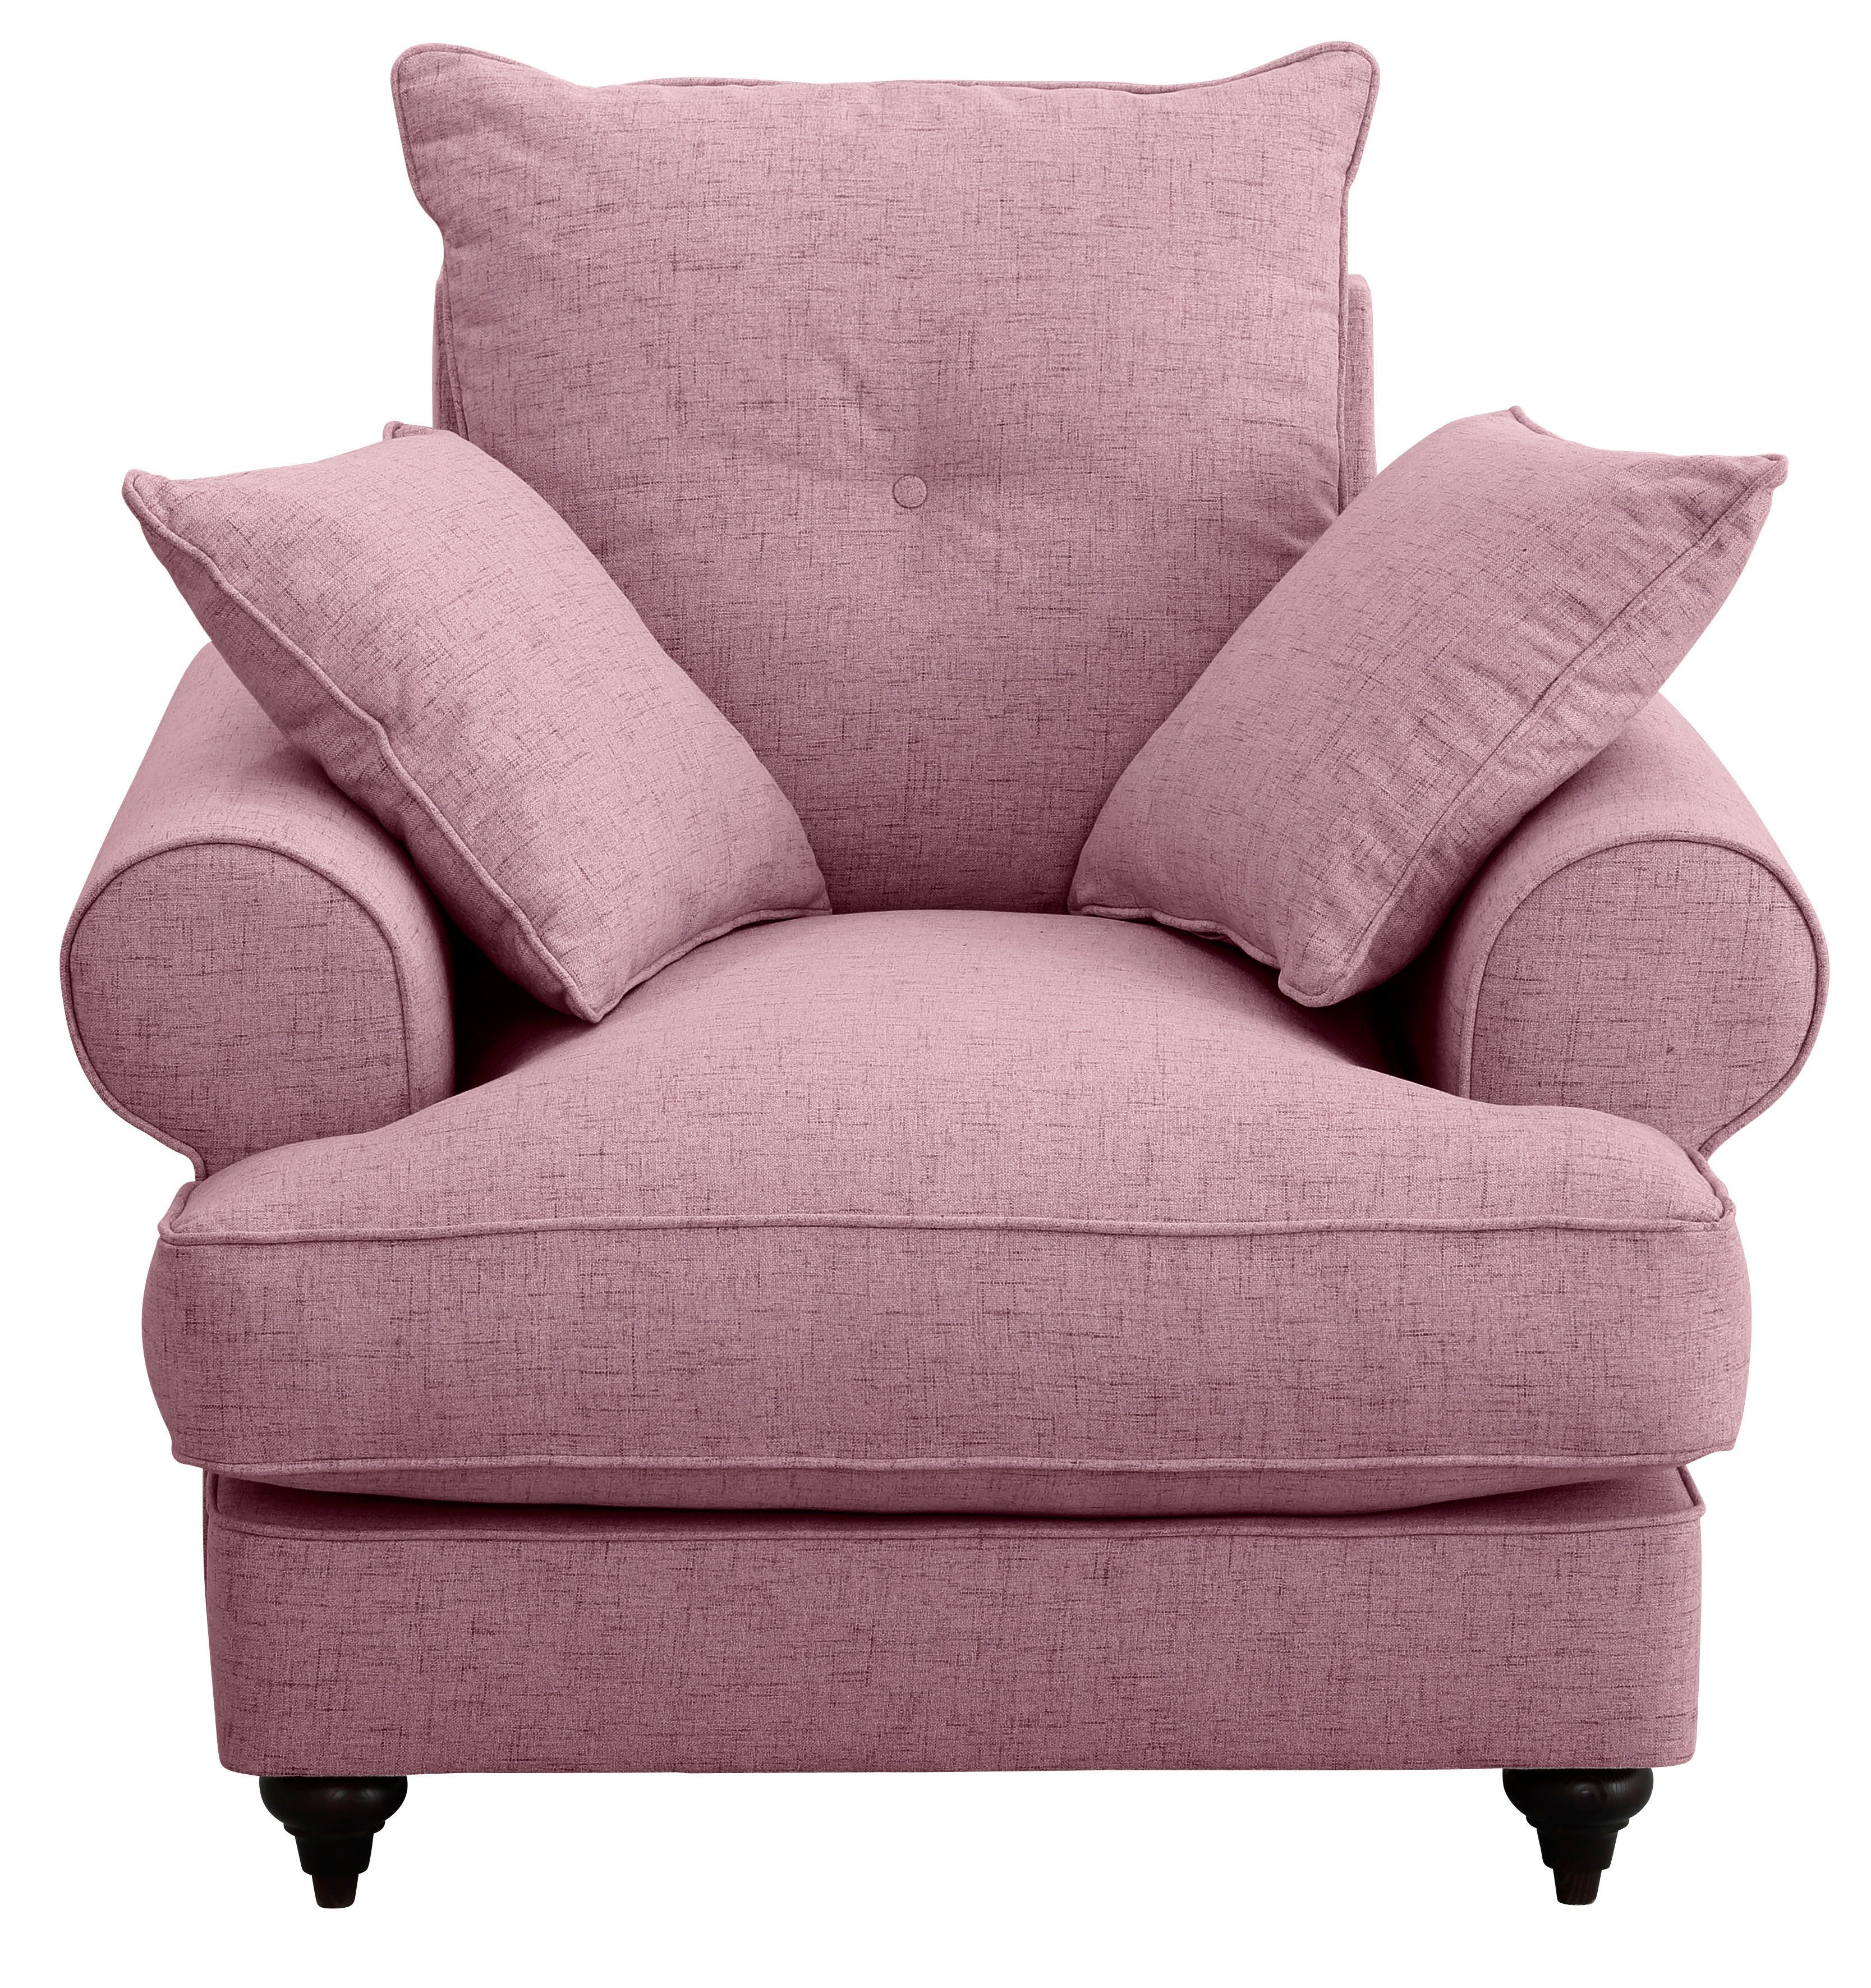 Home affaire Sessel mit erhältlich Bloomer, Kaltschaum, in hochwertigem violet verschiedenen Farben